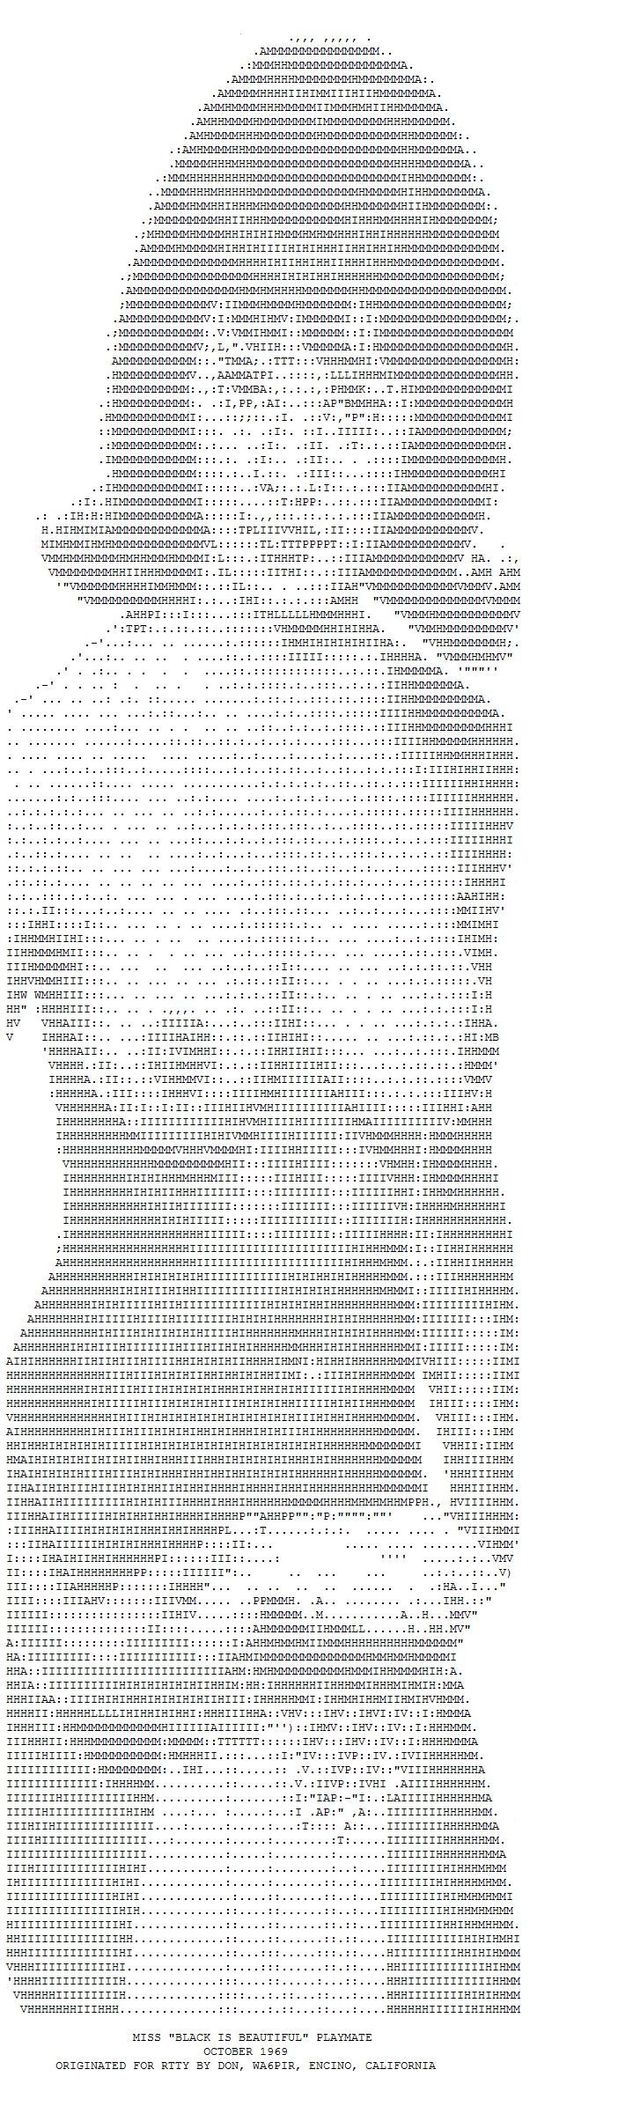 ASCII erotic images - 11